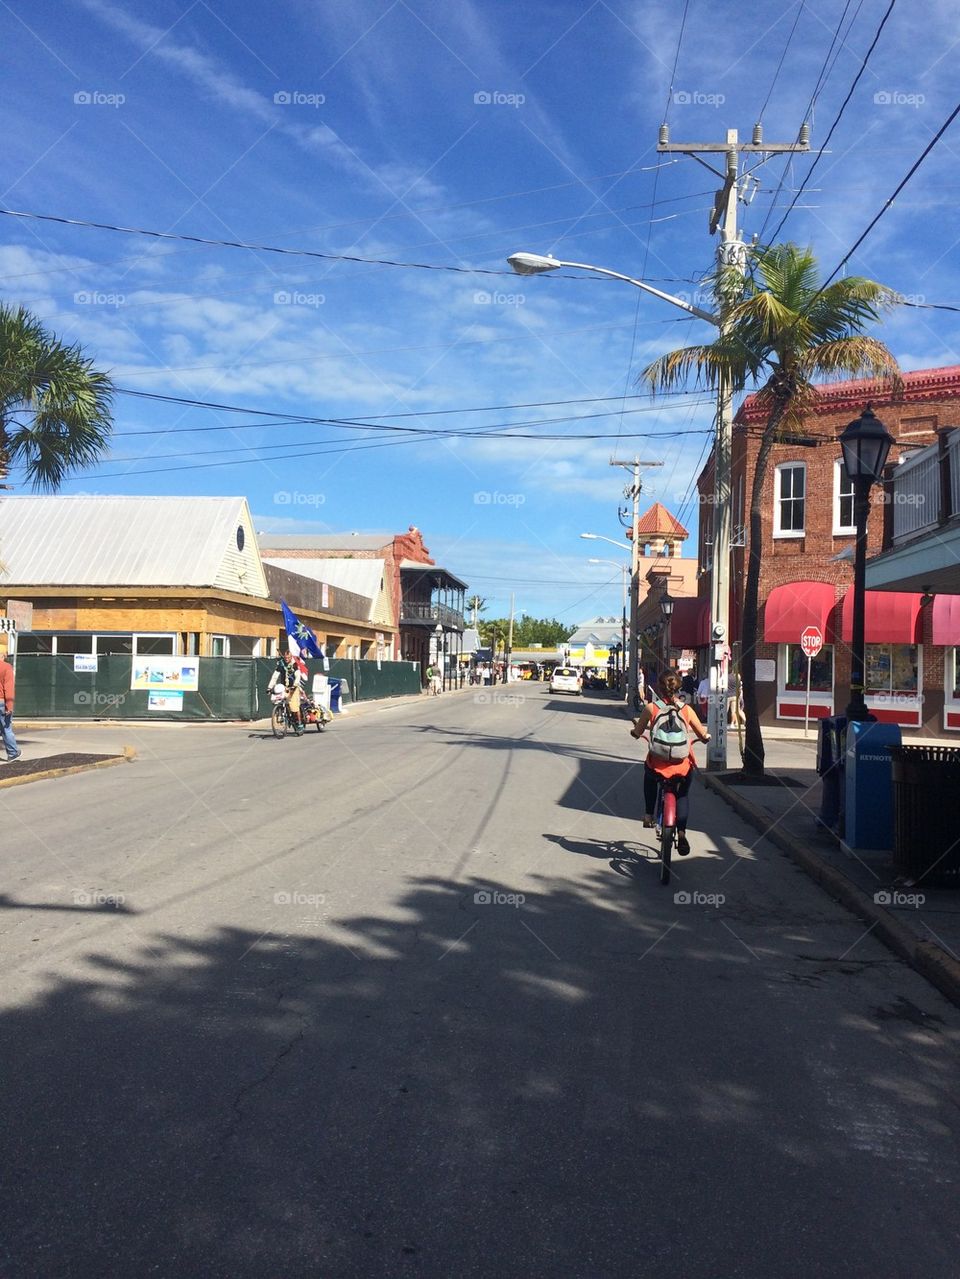 Biking Key West